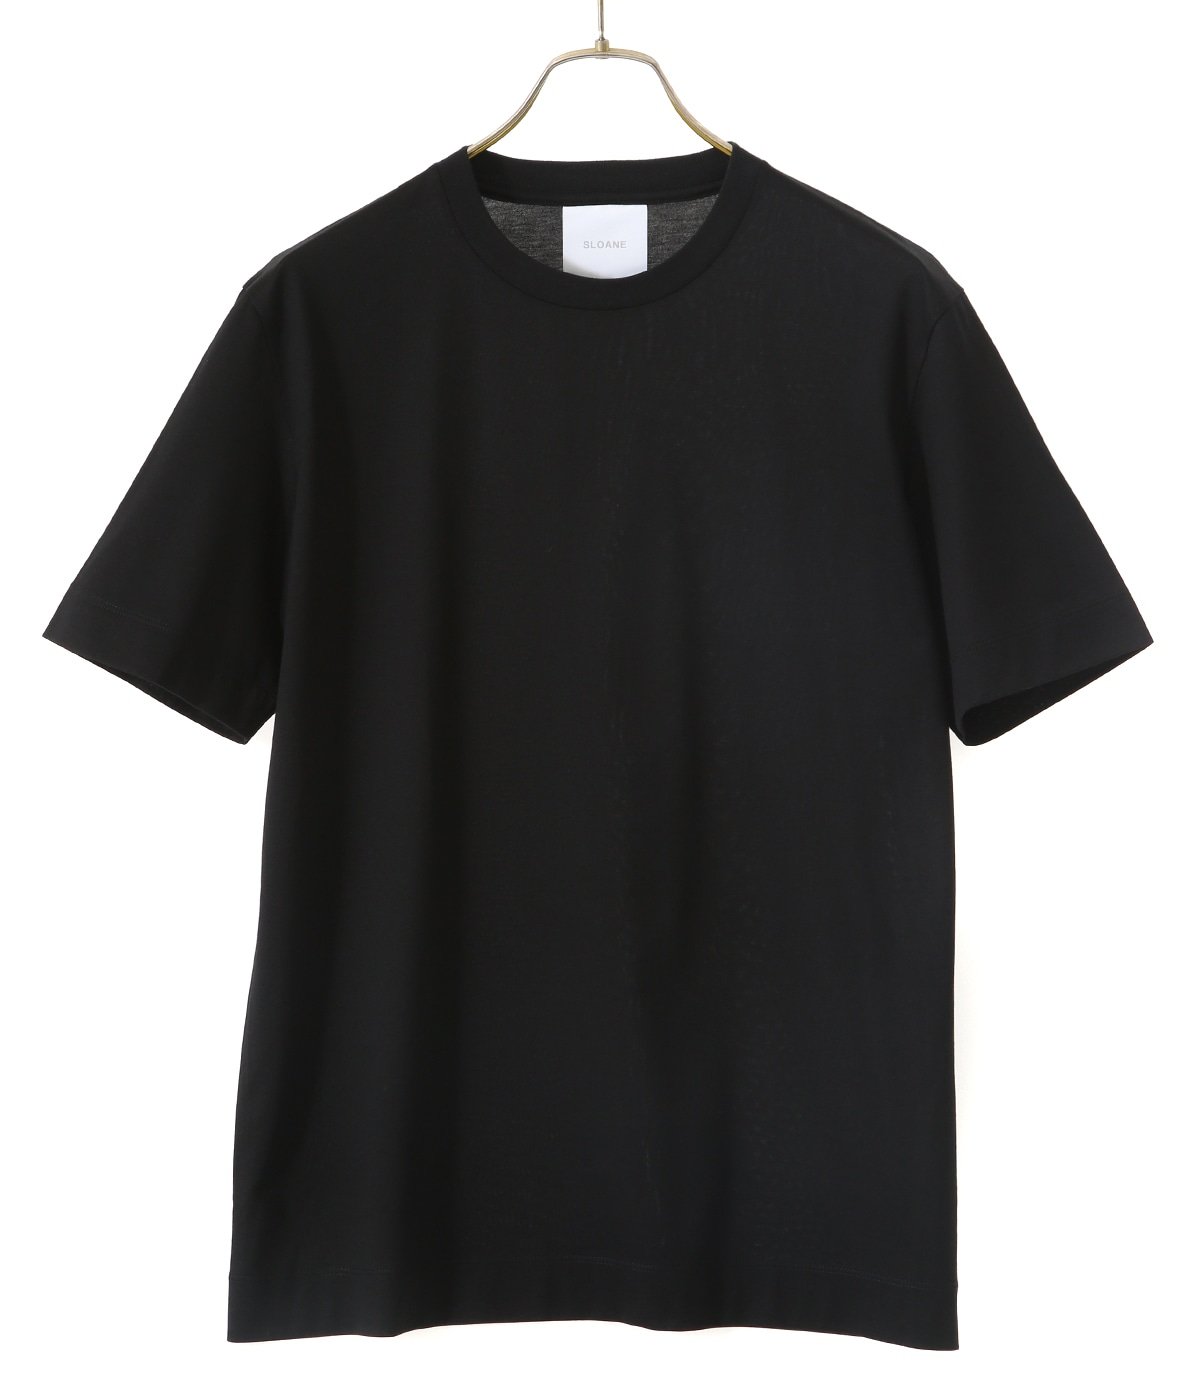 60/2 コットン天竺 Tシャツ | SLOANE(スローン) / トップス カットソー半袖・Tシャツ (メンズ レディース)の通販